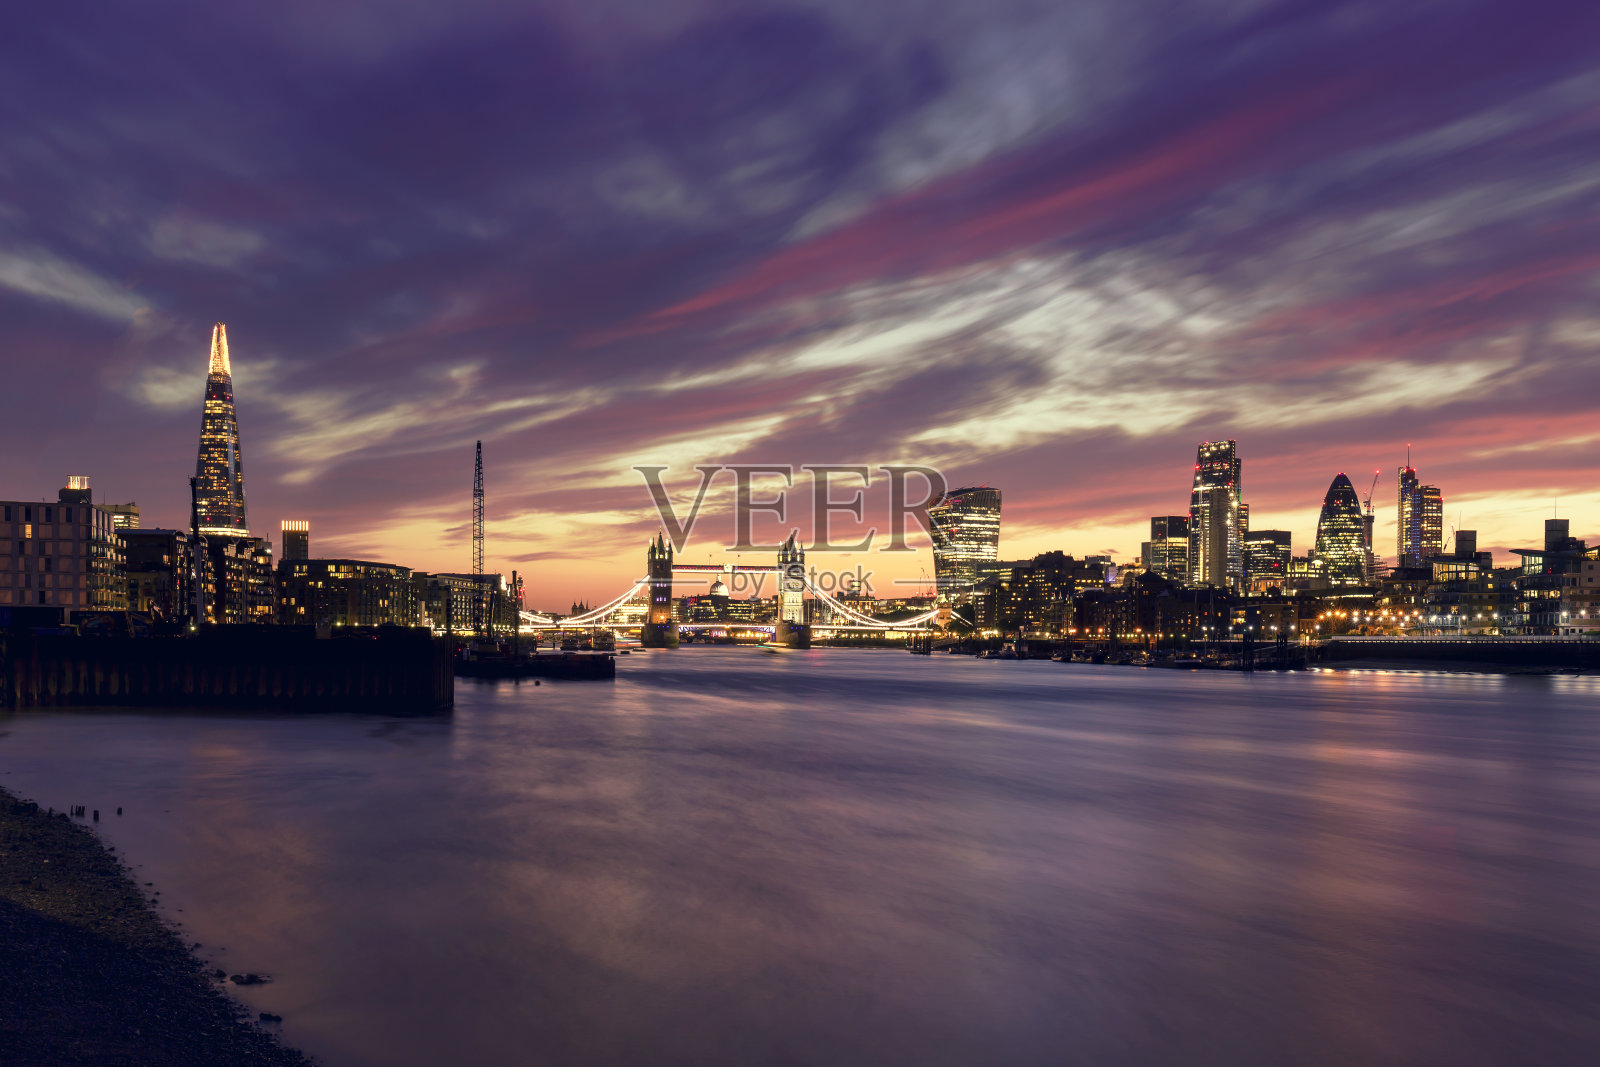 碎片大厦(Shard)、塔桥(Tower Bridge)和伦敦金融城(City of London)的夜景照片摄影图片